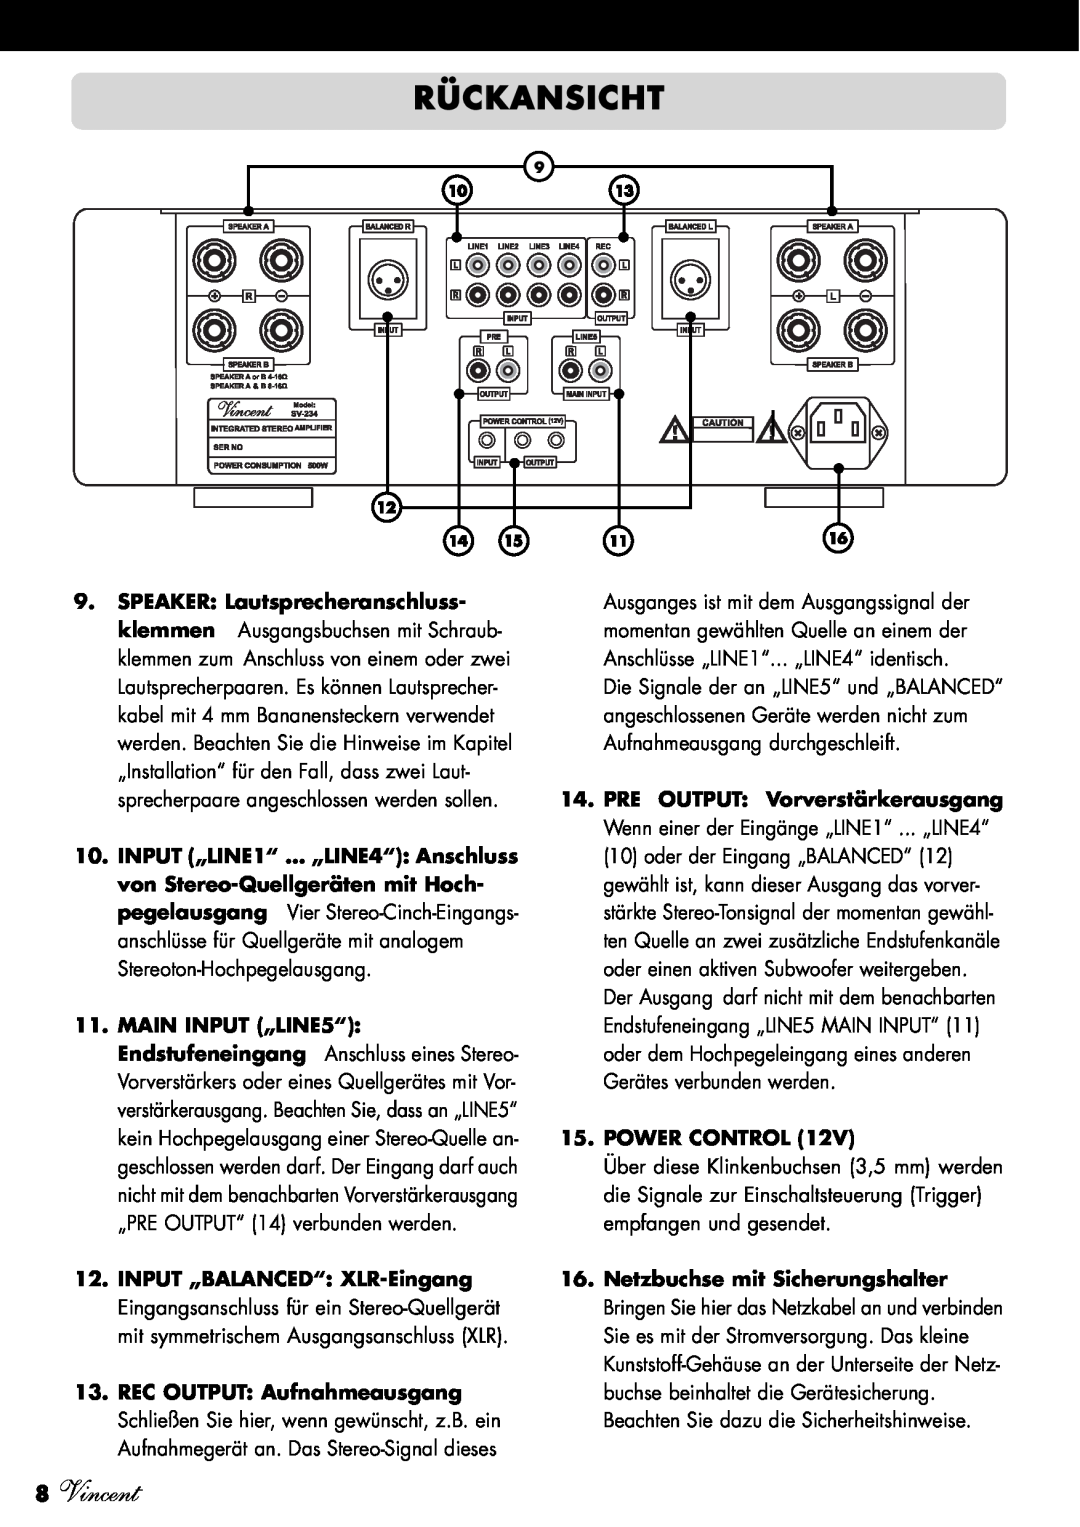 Vincent Audio SV-234 manuel dutilisation Rückansicht, 8Vincent, Power Control 